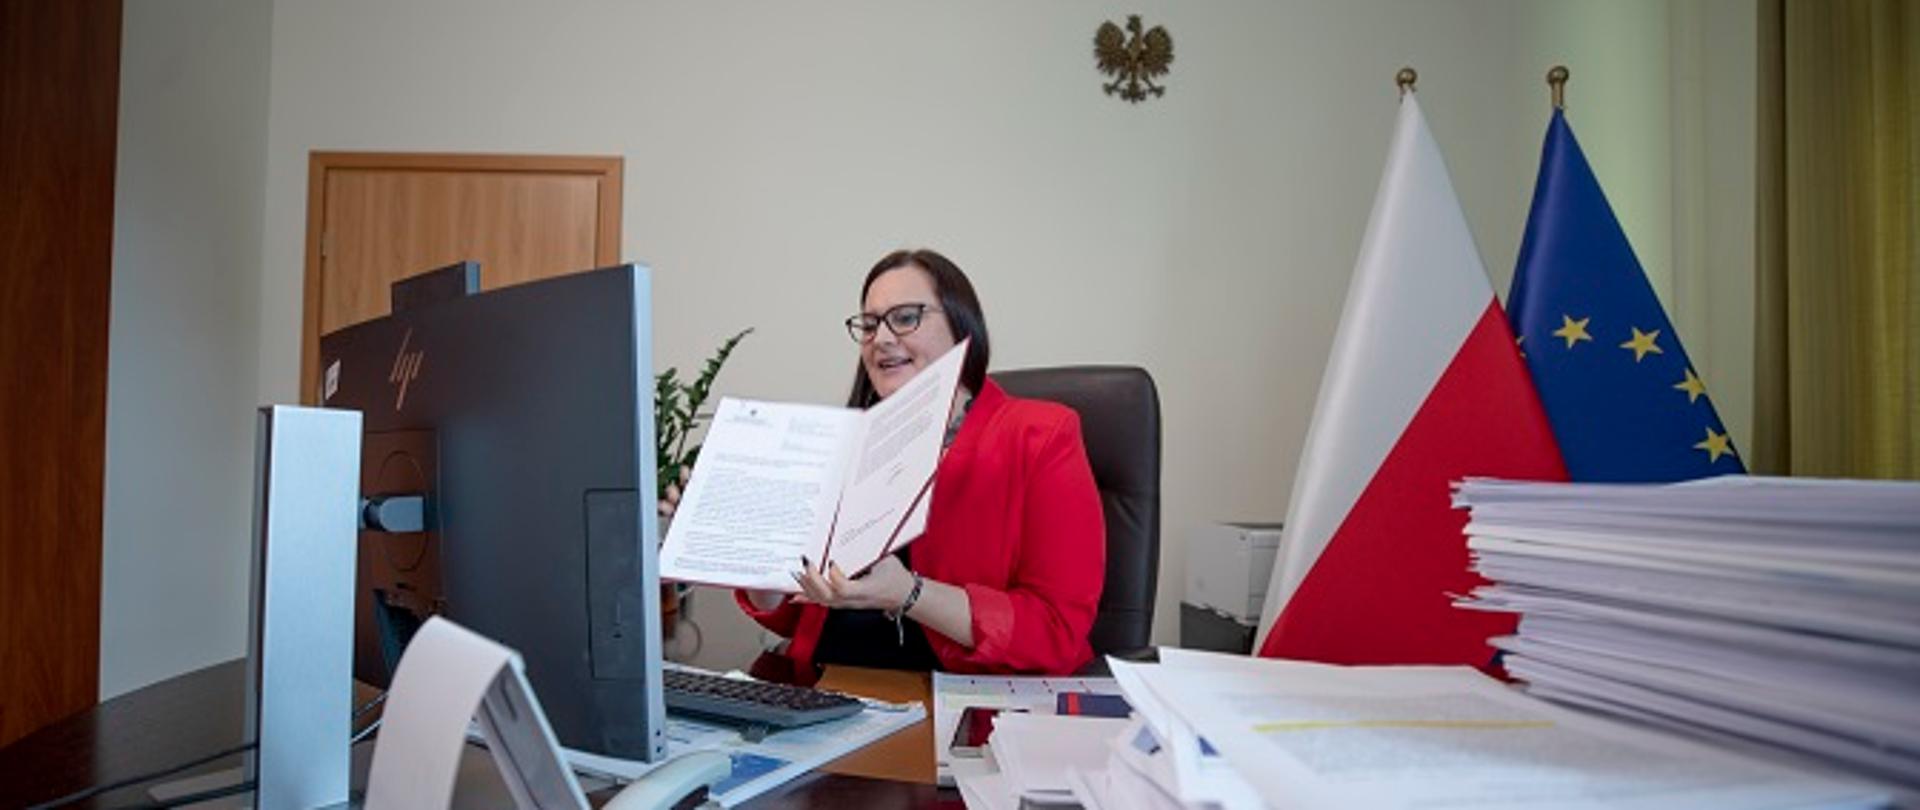 Wiceminister Małgorzata Jarosińska-Jedynak w swoim gabinecie, siedzi przy biurku i w rękach trzyma dokument - decyzję o dofinansowaniu prac nad dokumentacją potrzebnej do budowy mostu w Nowym Brzesku.